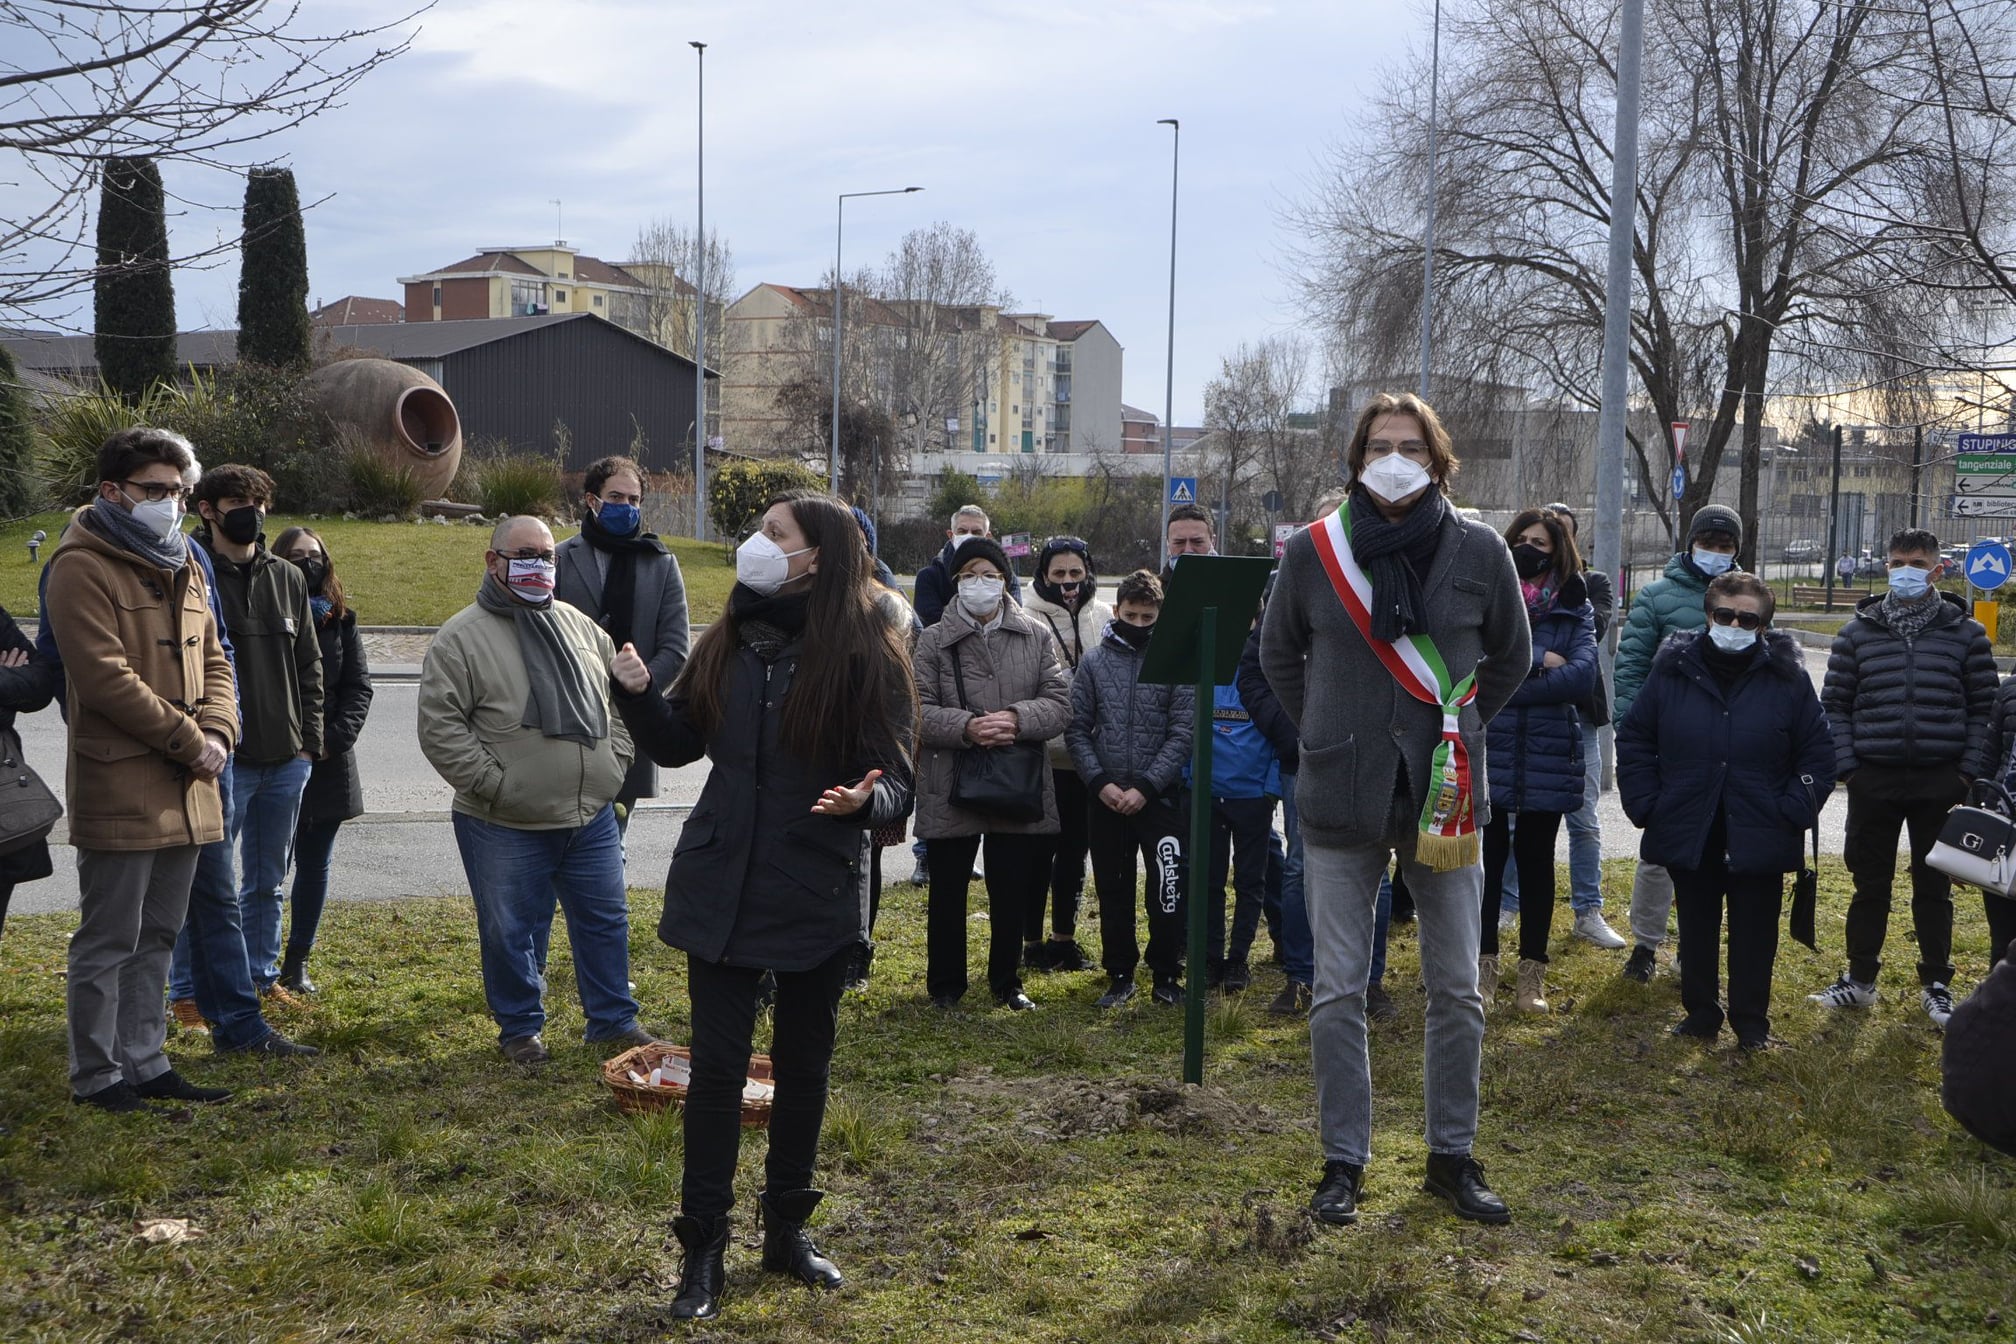 NICHELINO – Nuovo appuntamento con la piantumazione degli alberi in ricordo dei defunti durante il lockdown